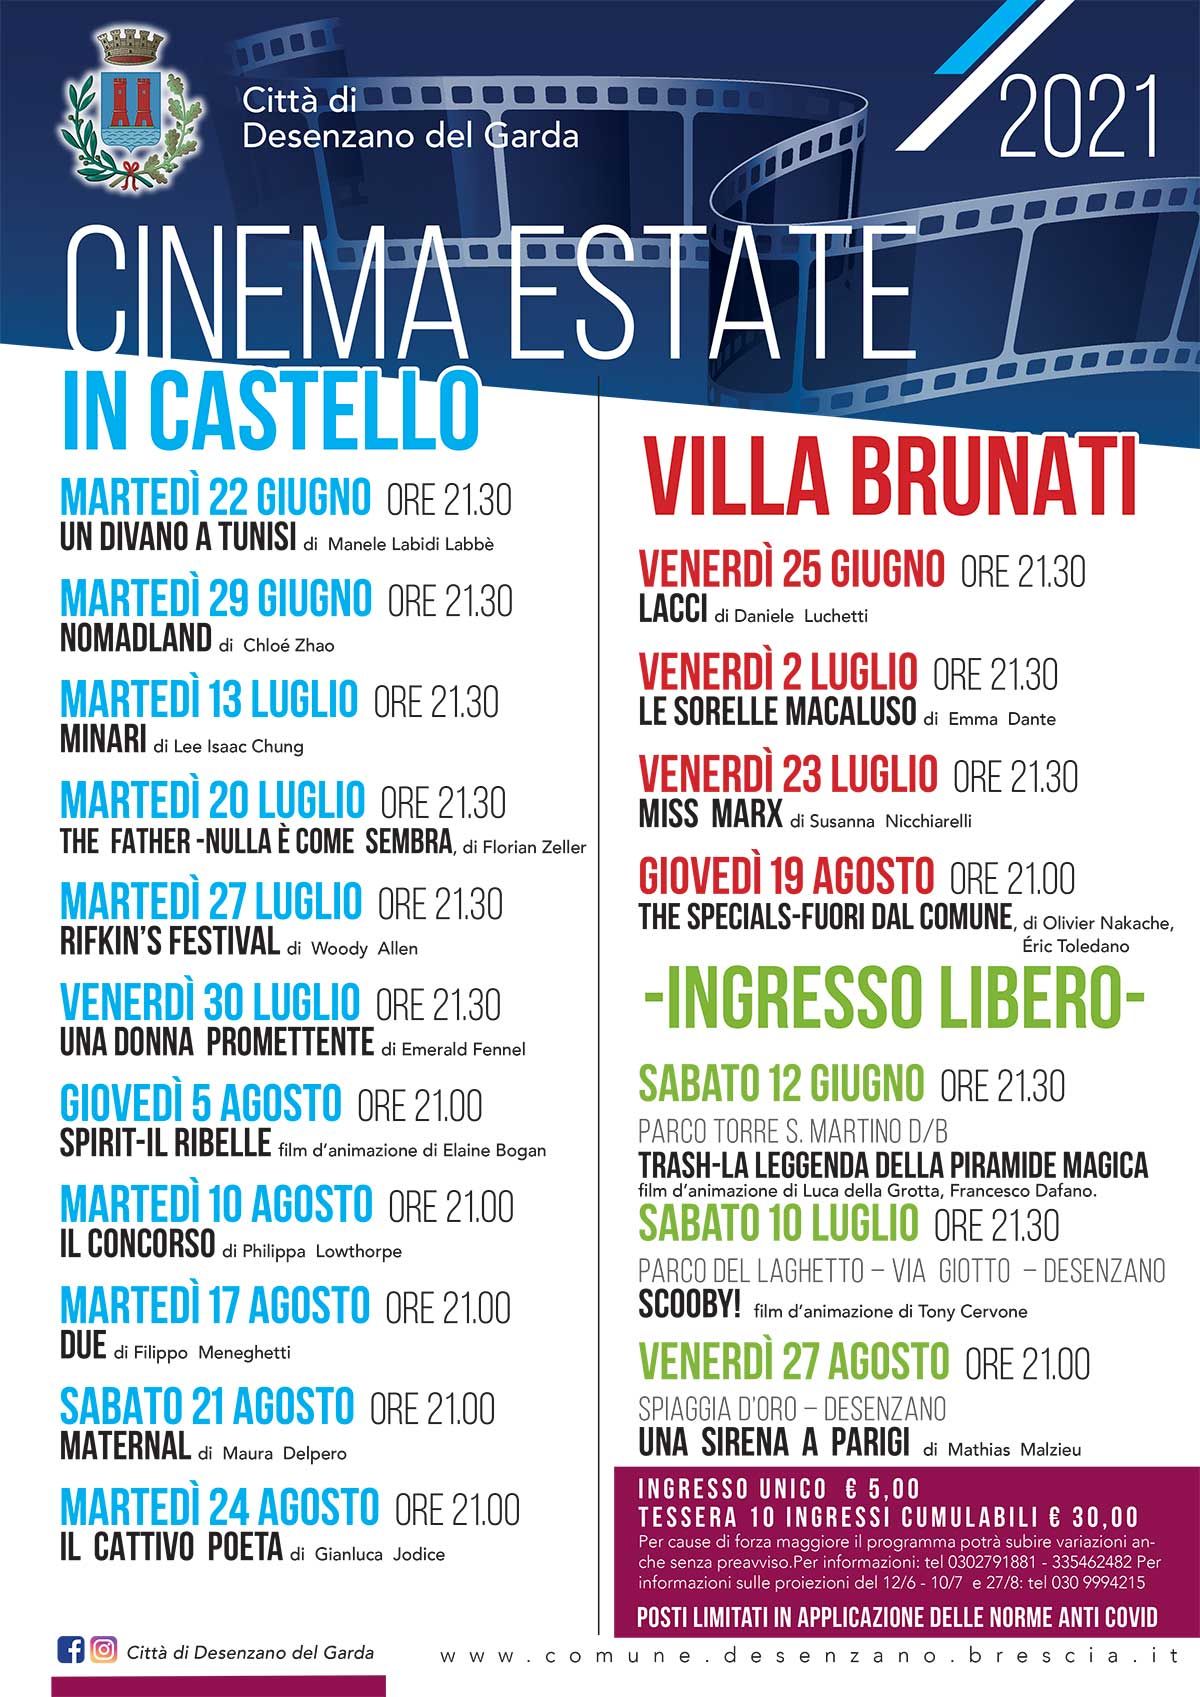 CINEMA+2021-castello-desenzano